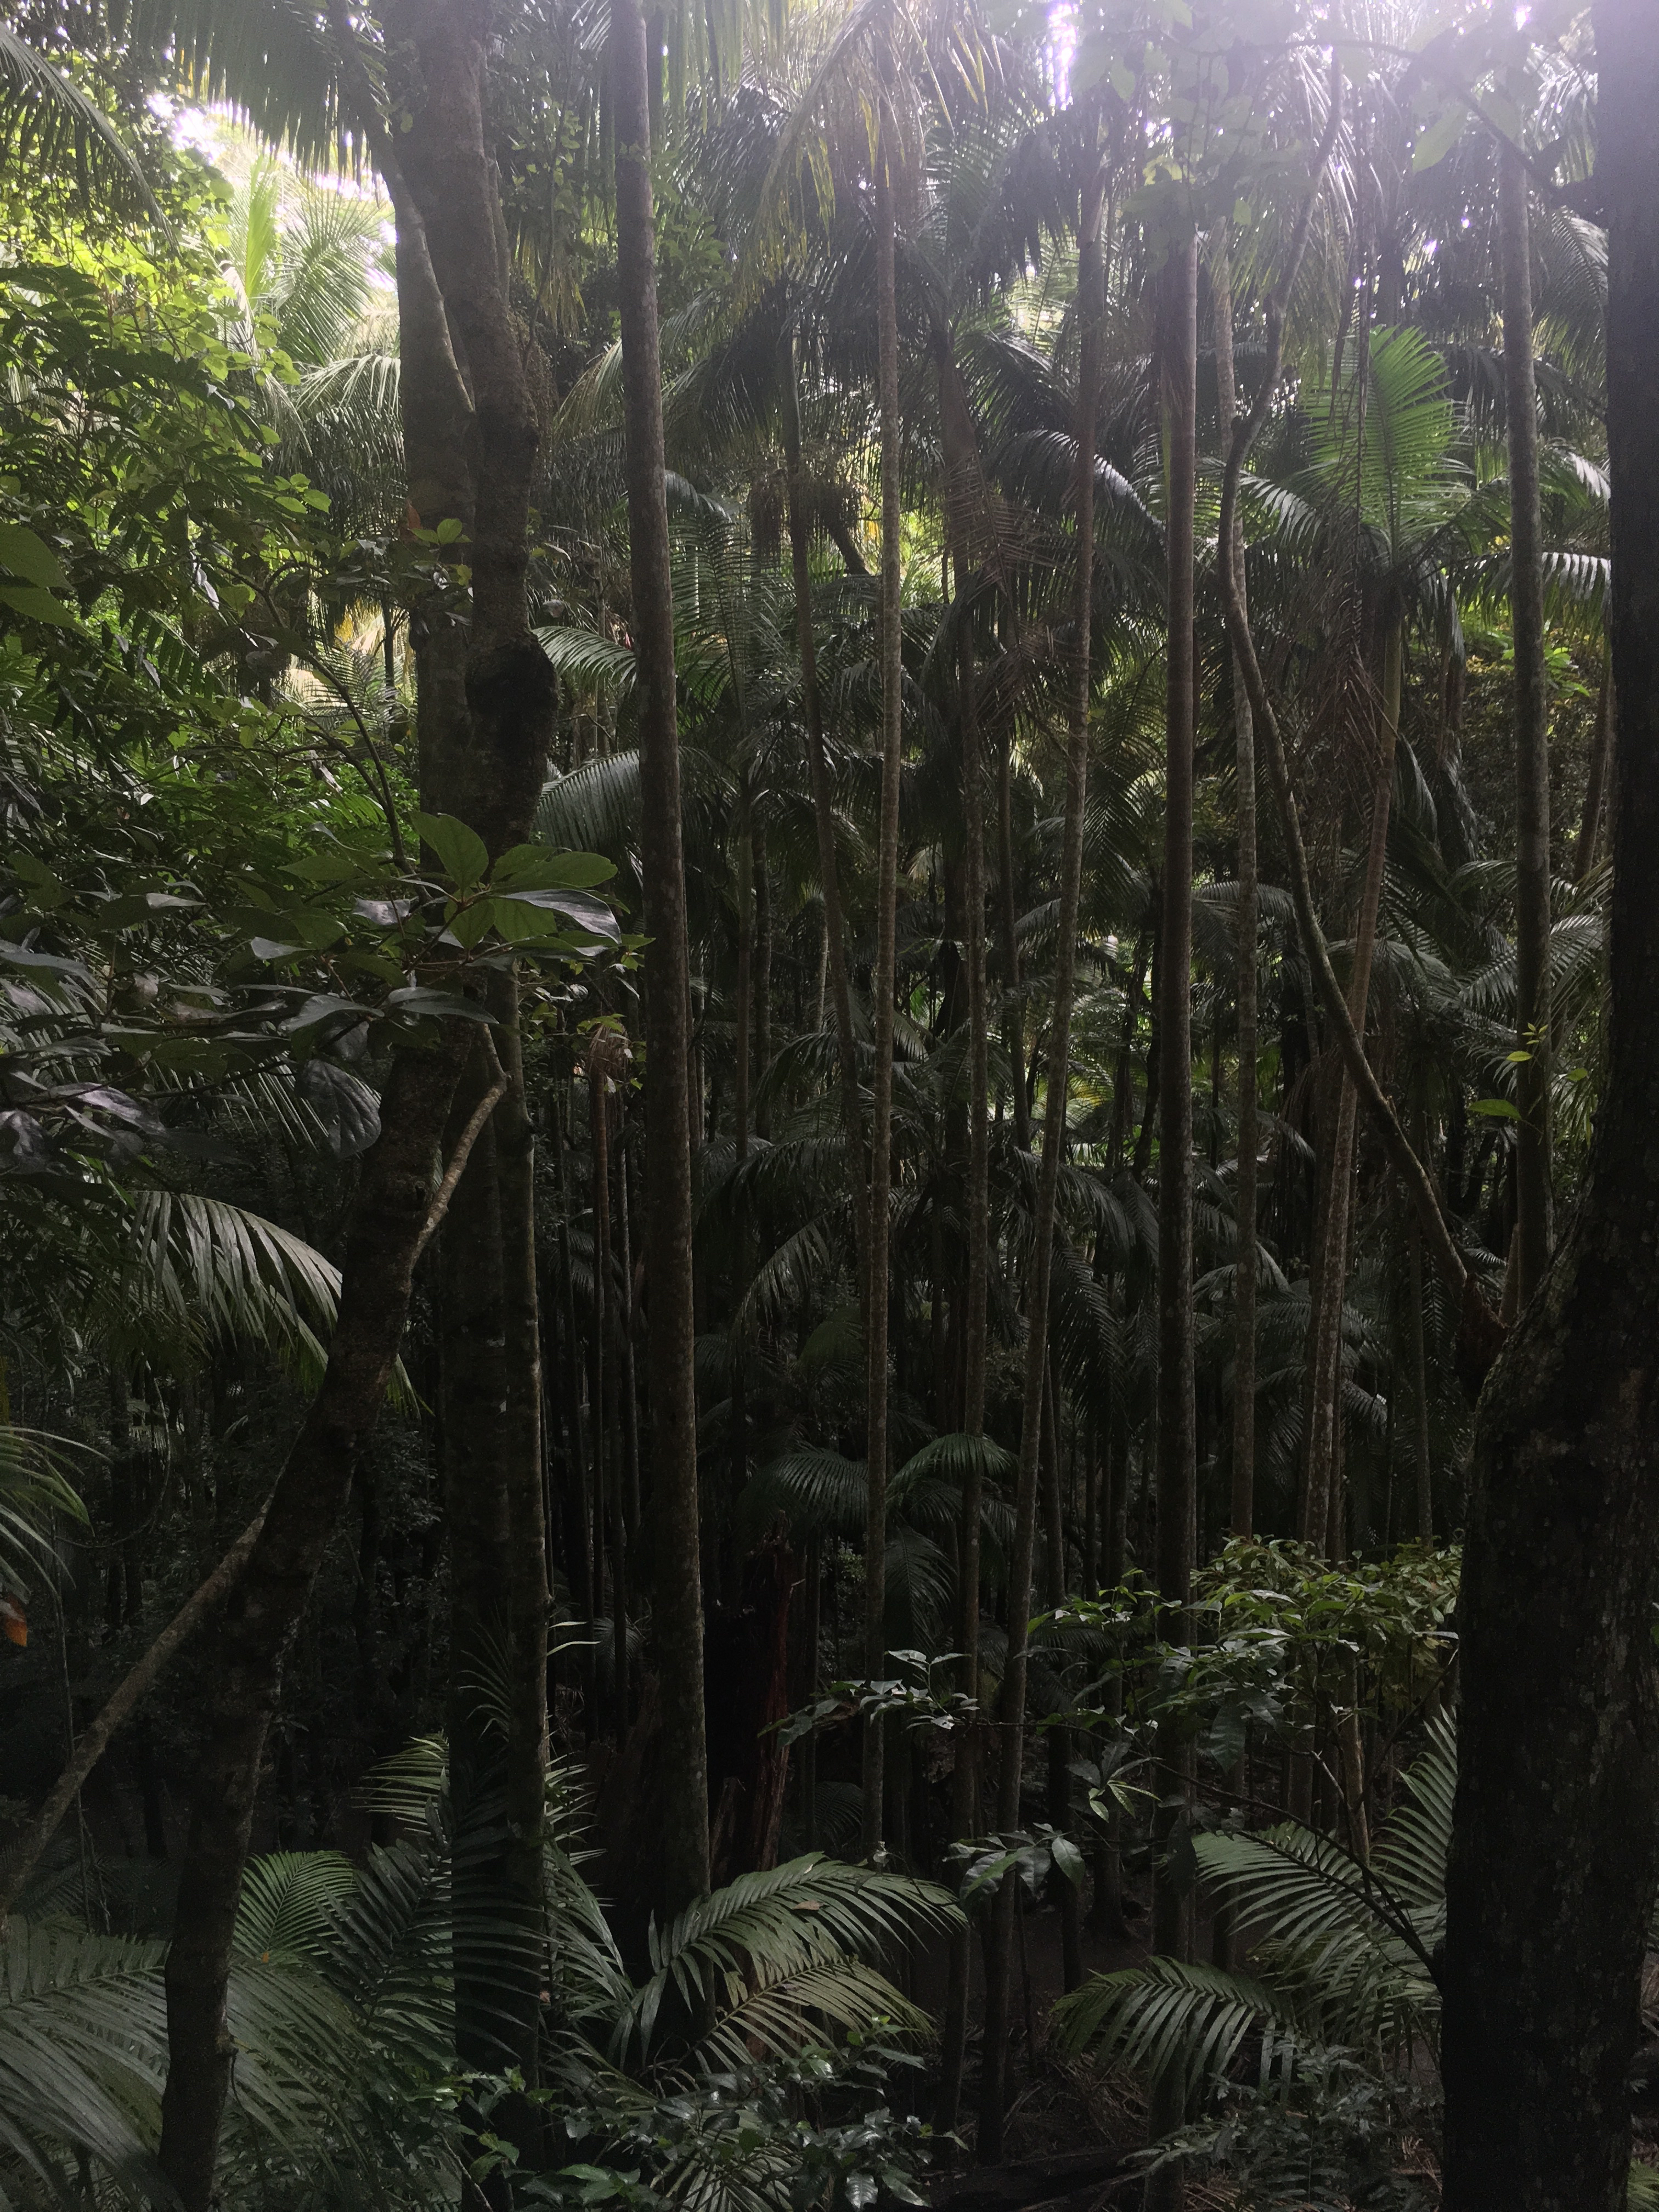 More Jungle